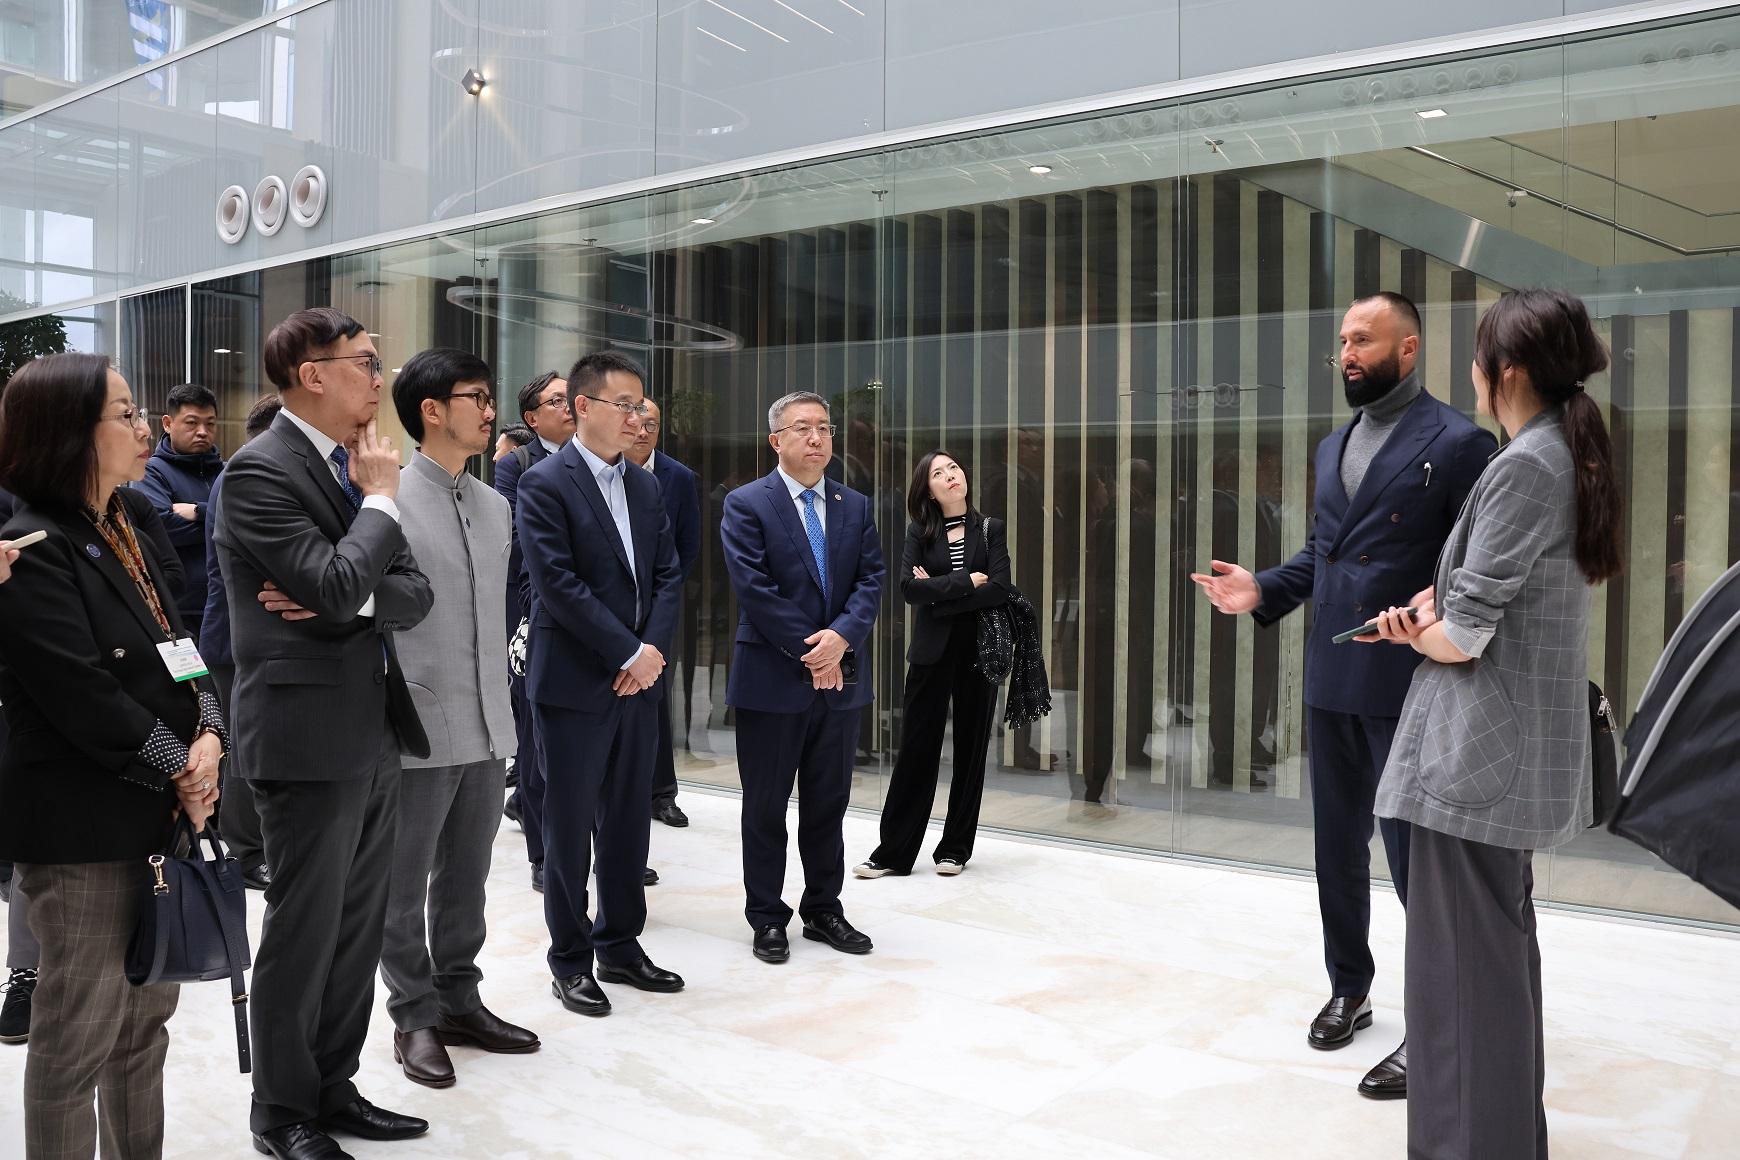 内地与香港经贸代表团于五月十六至二十二日访问匈牙利和哈萨克斯坦。图示代表团五月二十日在哈萨克斯坦参观阿斯塔纳国际金融中心。